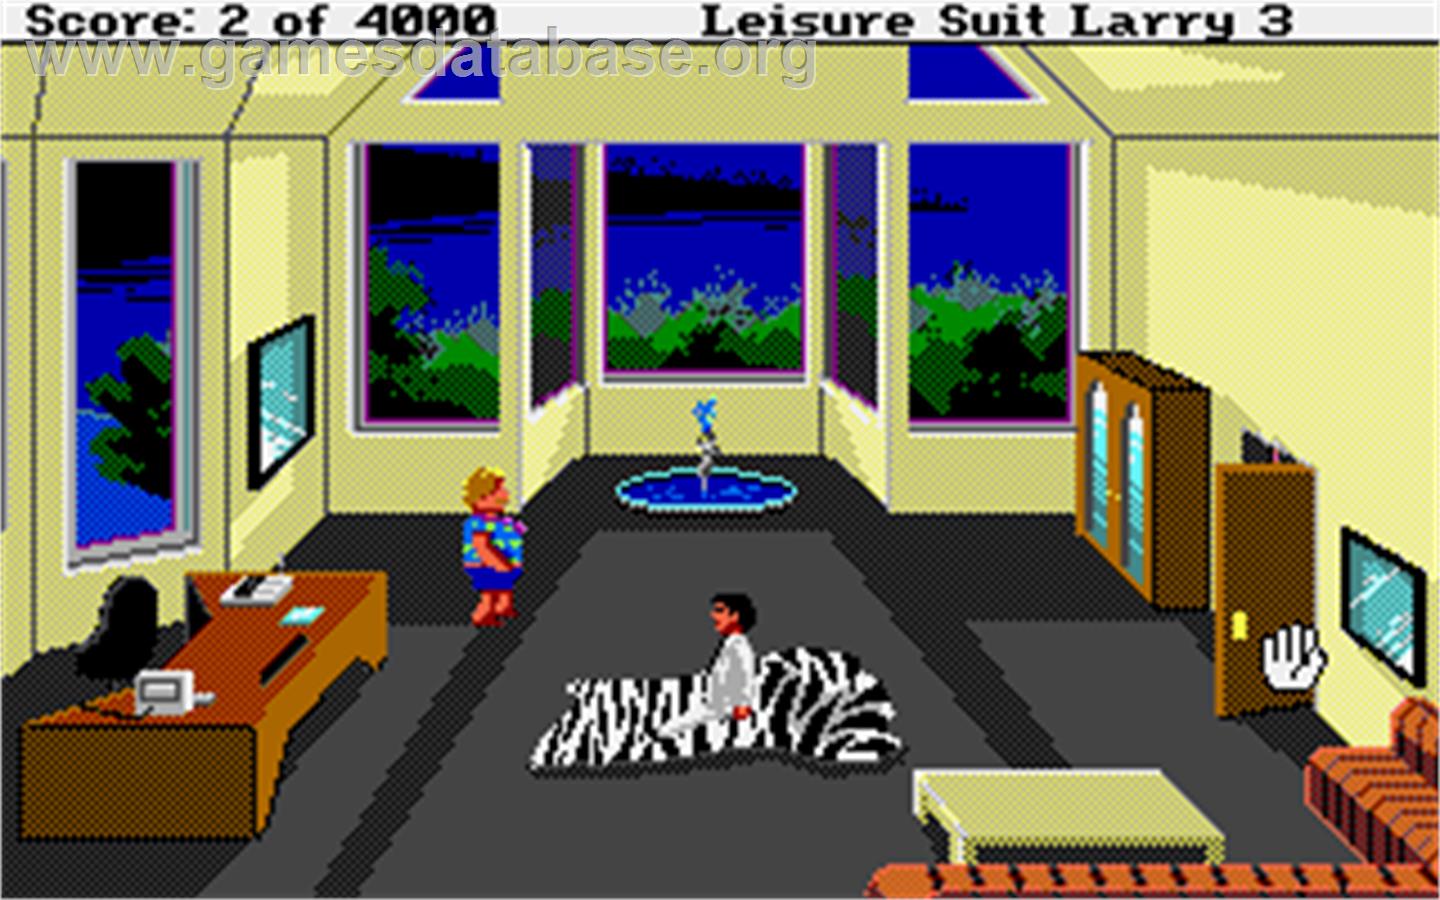 Leisure Suit Larry 3: Passionate Patti in Pursuit of the Pulsating Pectorals - Atari ST - Artwork - In Game